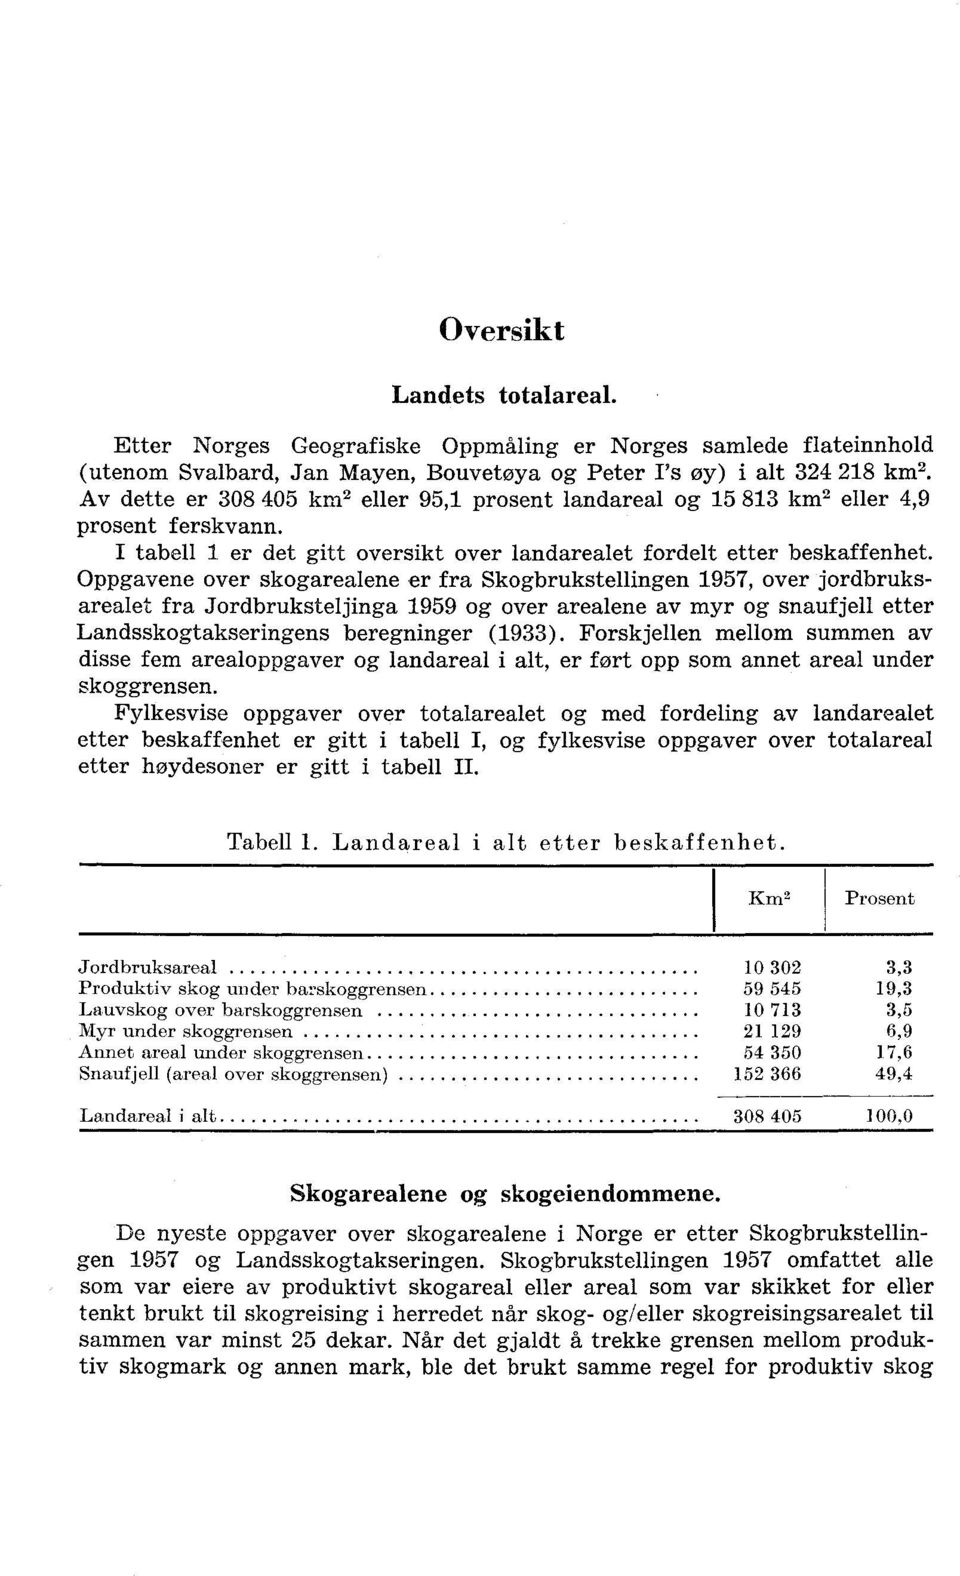 Oppgavene over skogarealene er fra Skogbrukstellingen 1957, over jordbruksarealet fra Jordbruksteljinga 1959 og over arealene av myr og snaufjell etter Landsskogtakseringens beregninger (1933).